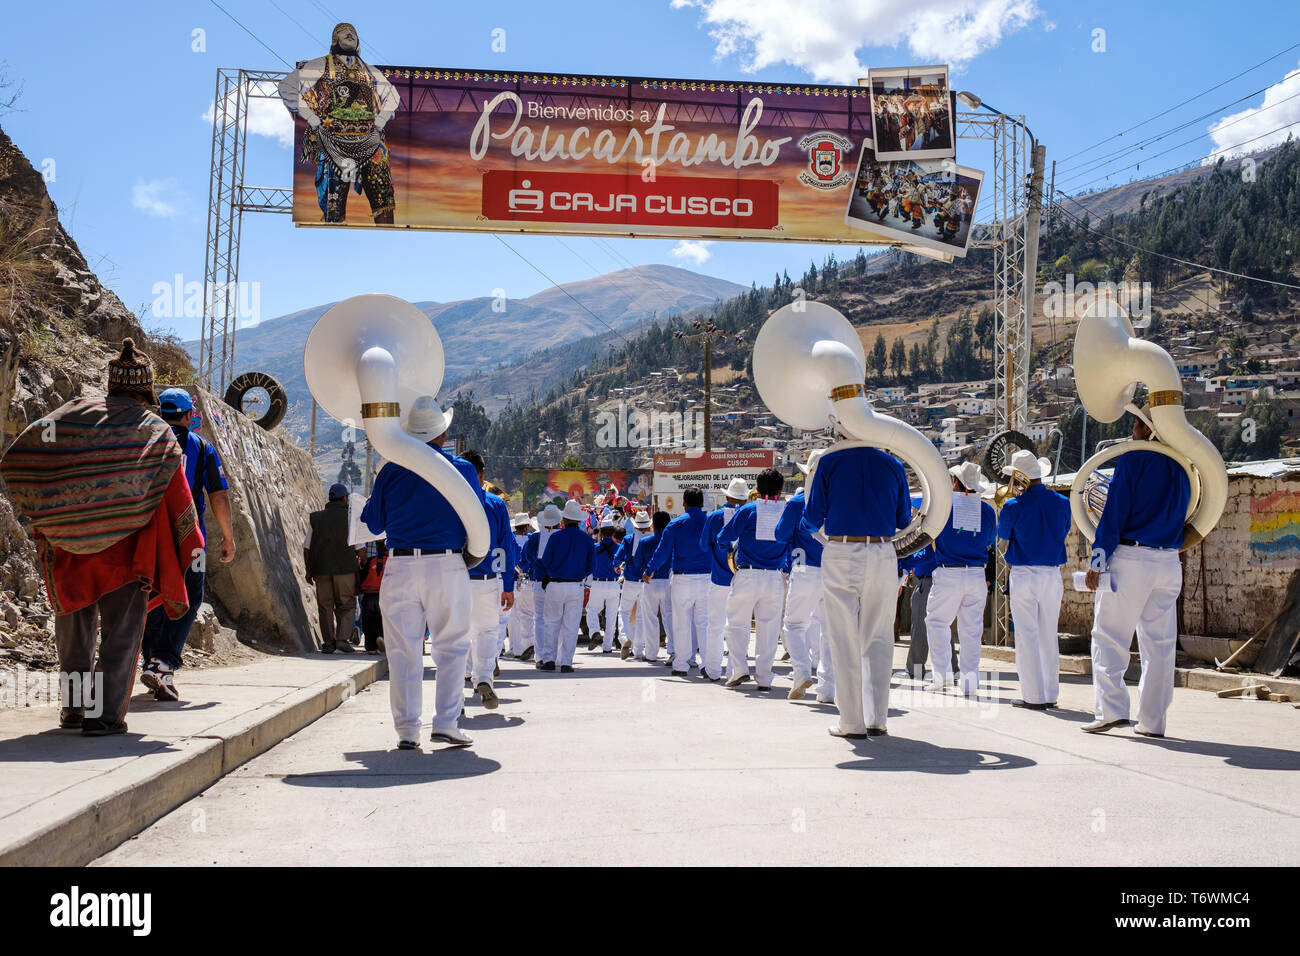 Banda musicale suonando mentre entrando Paucartambo per il Festival di La Virgen del Carmen, regione di Cusco, Perù Foto Stock